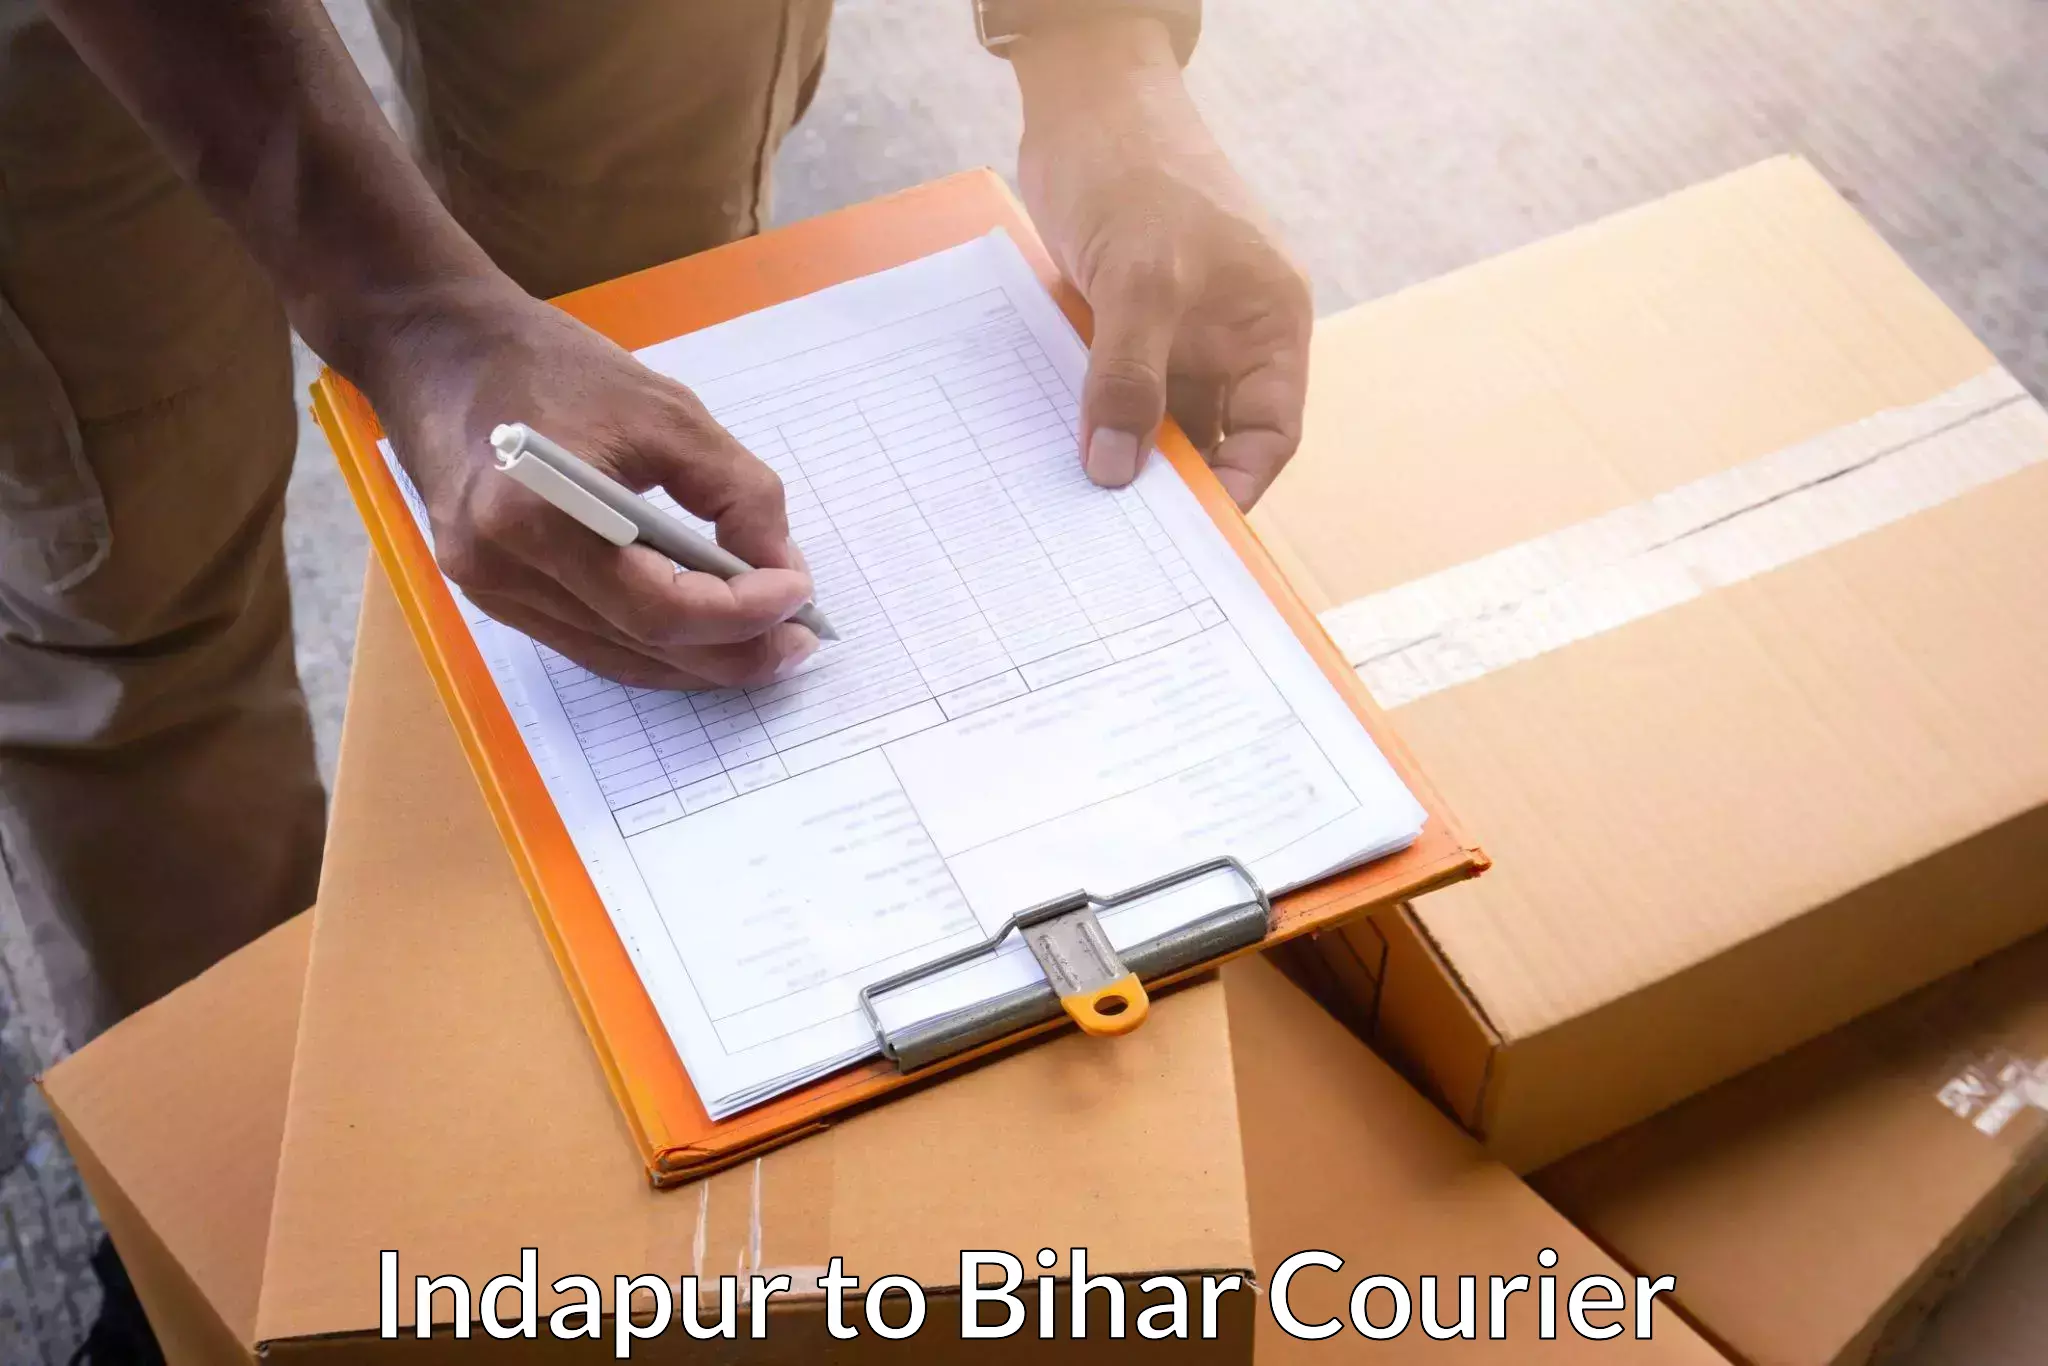 Urgent courier needs in Indapur to Bihar